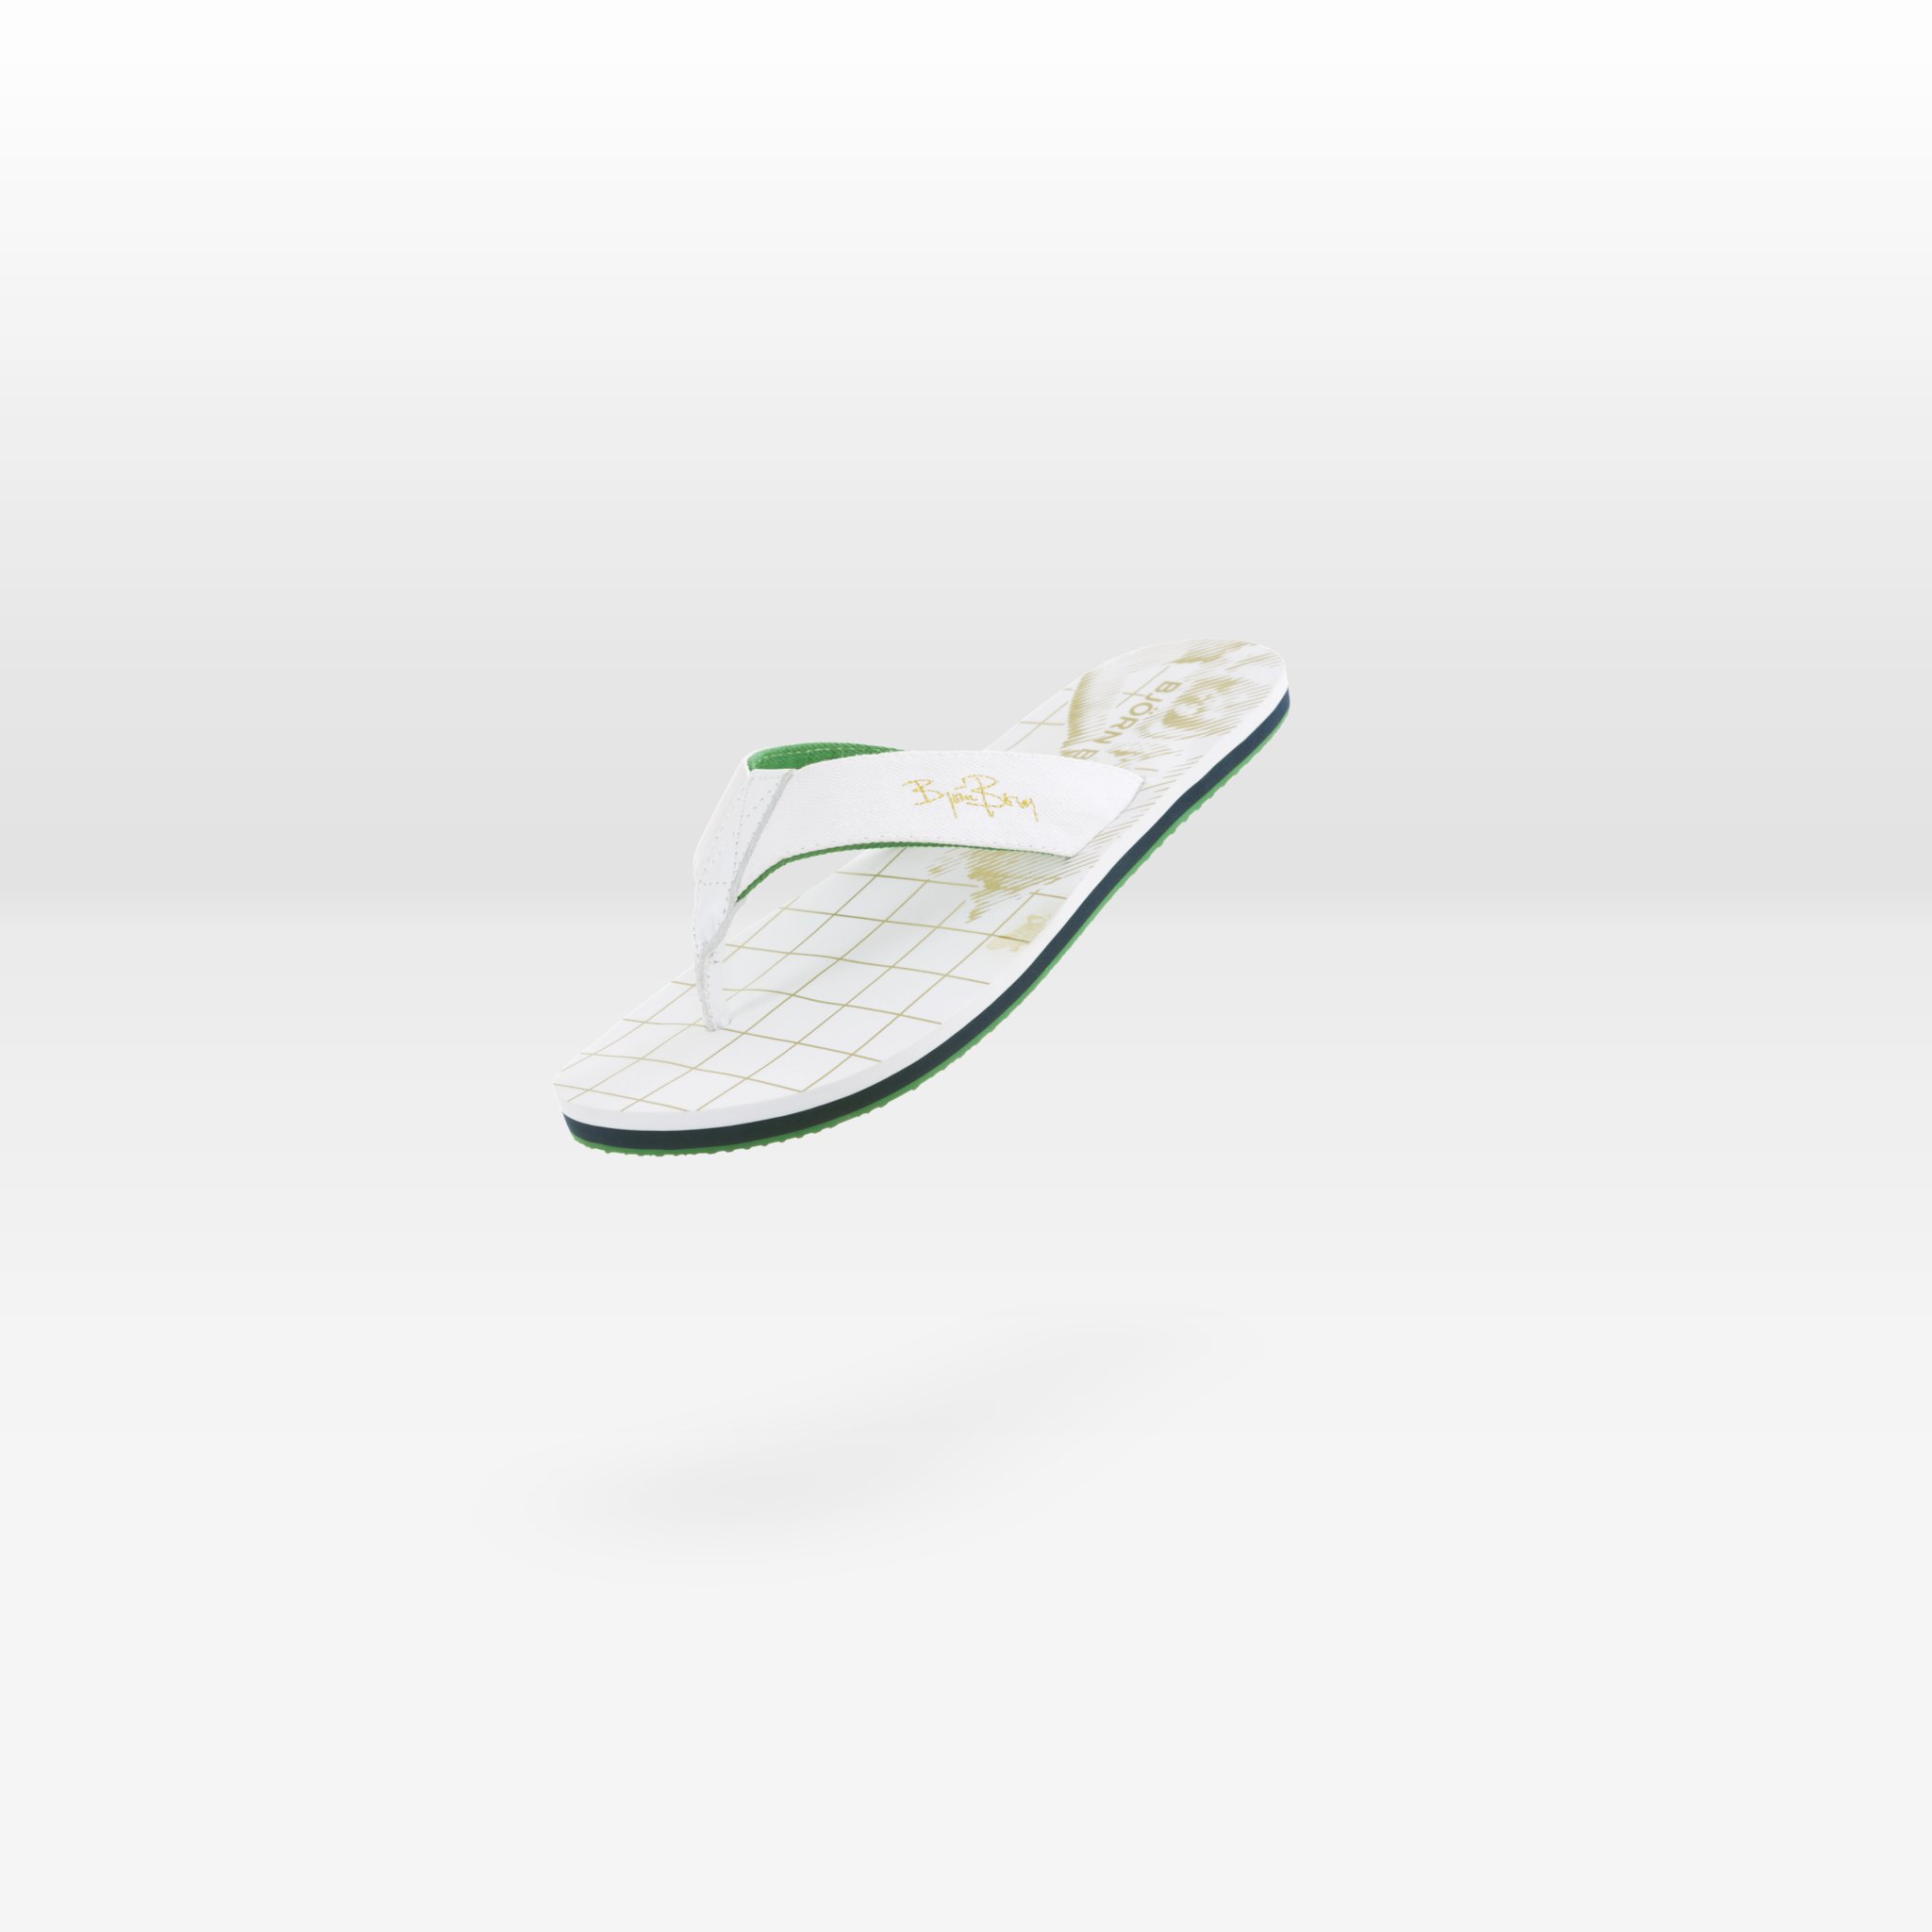 Schuhe Produktfotografie 3D 360 Grad Studio PLAAT